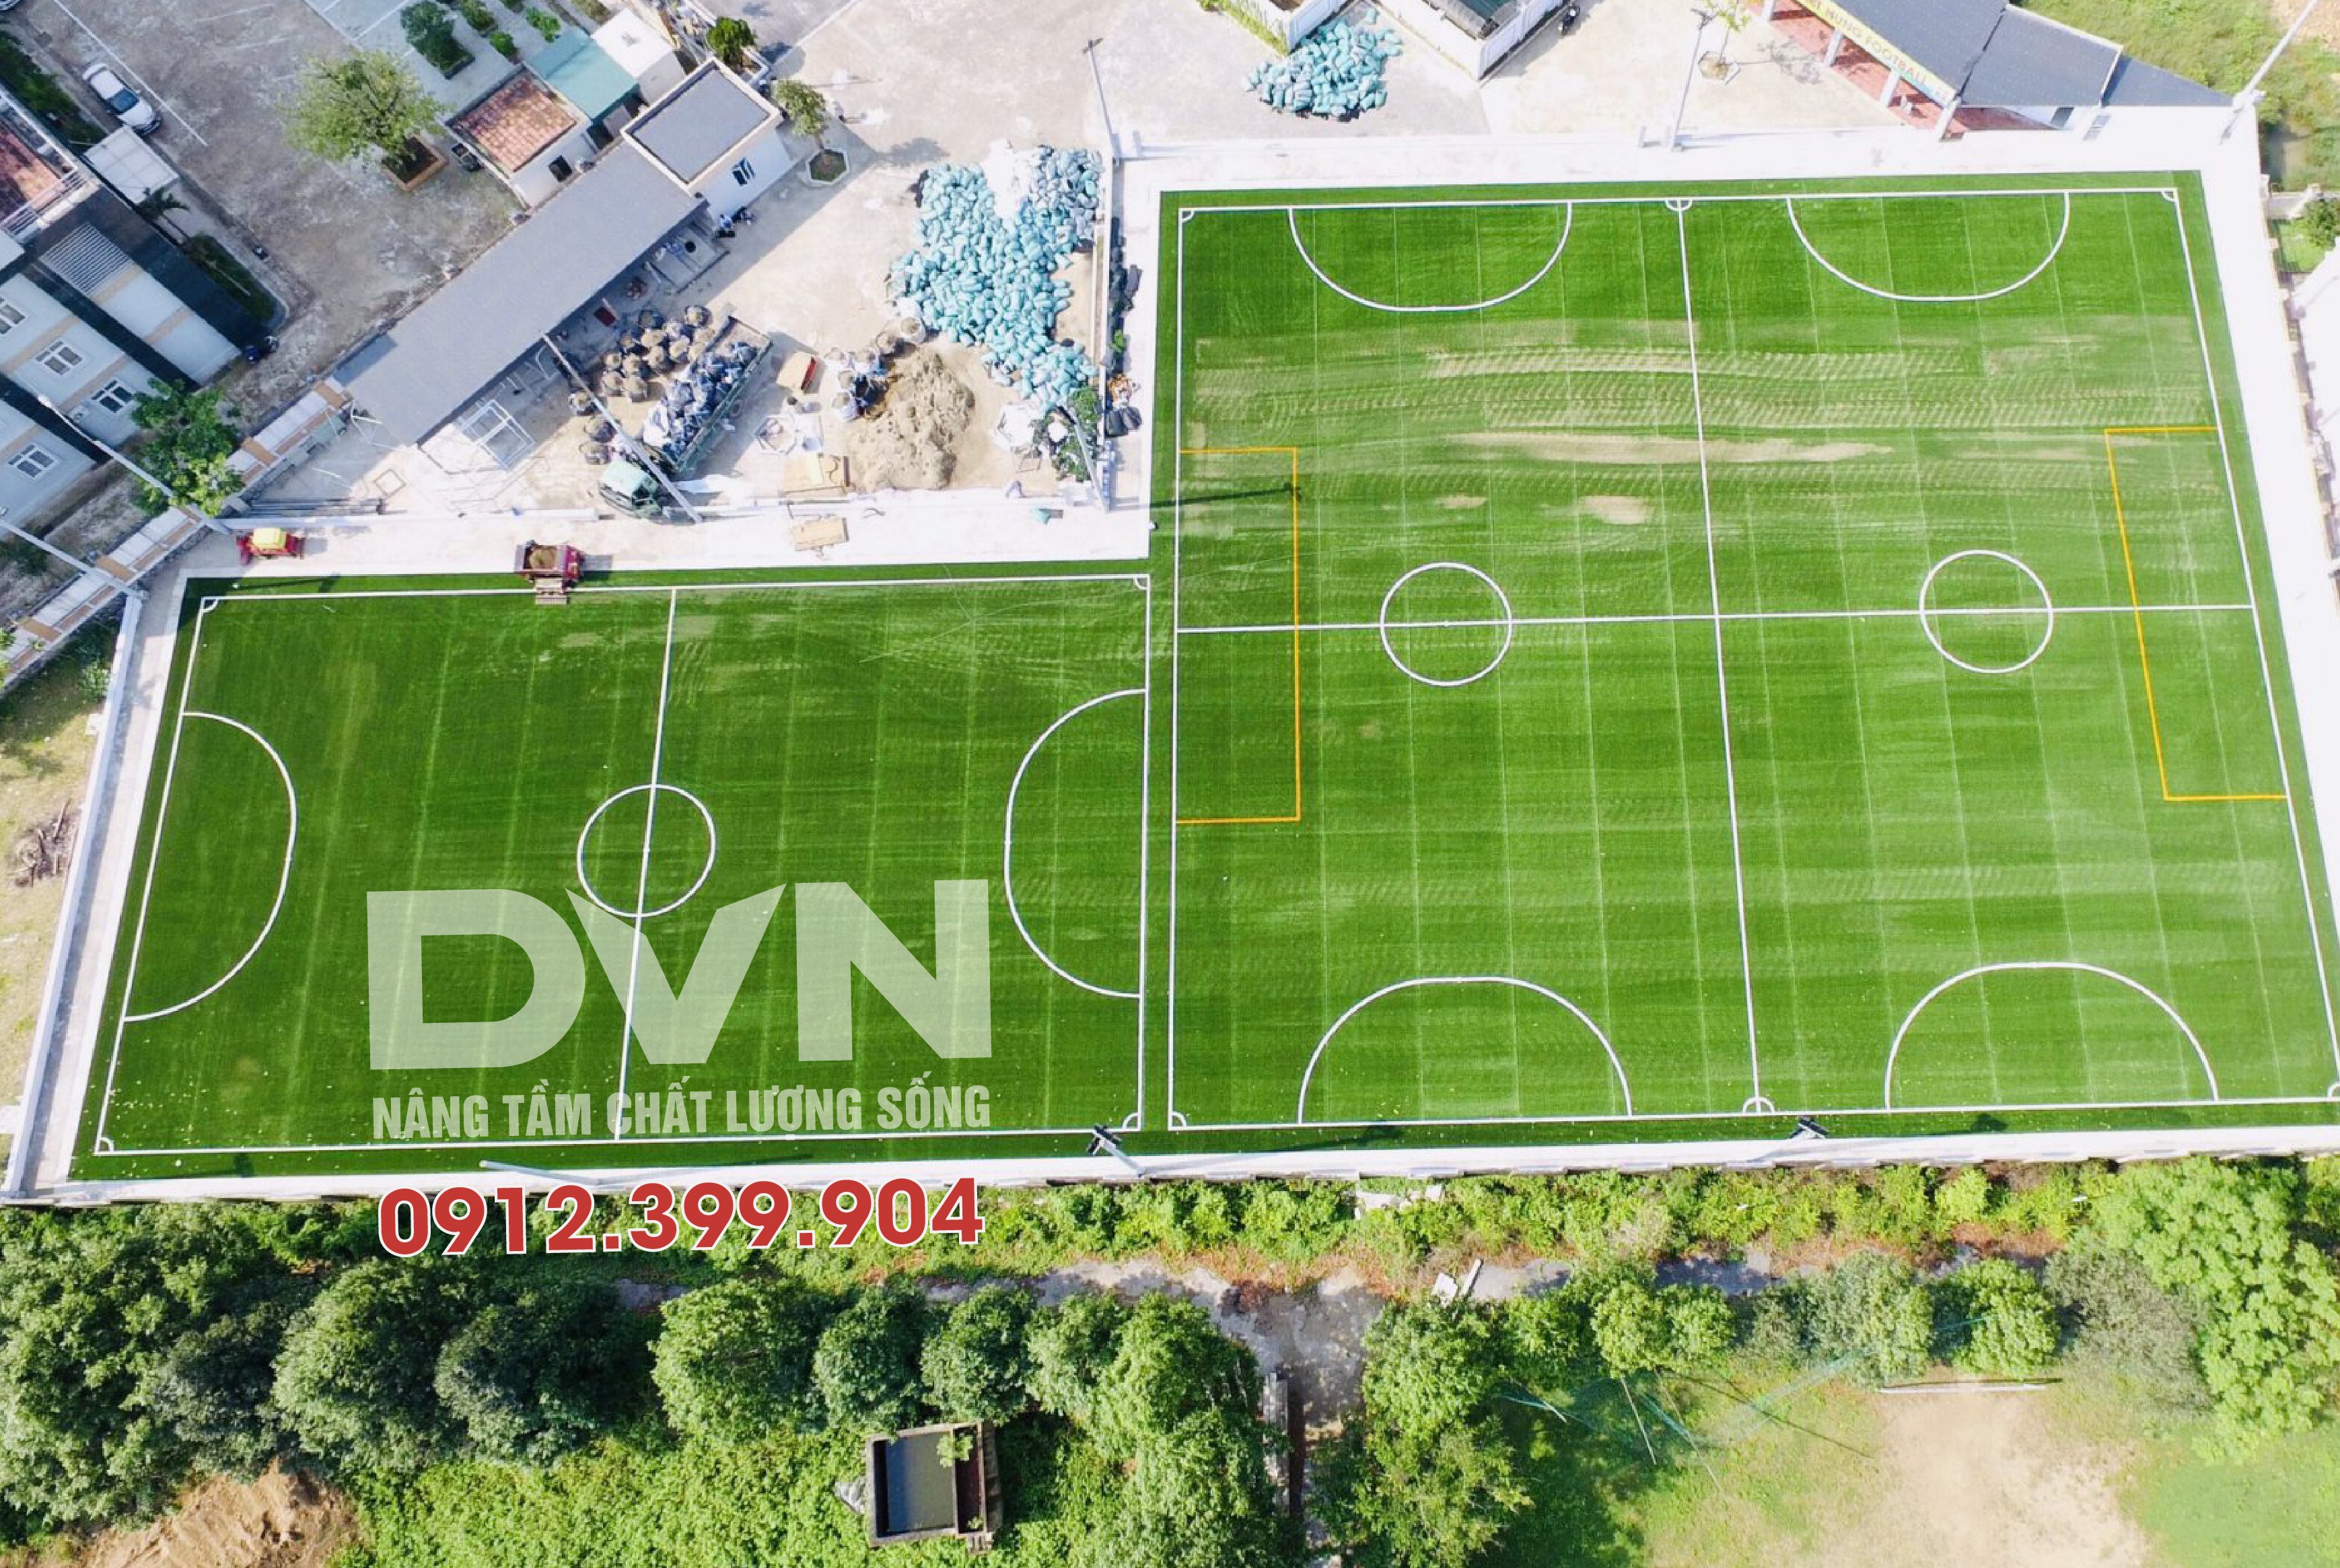 DVN cam kết chất lượng cỏ nhân tạo đạt chuẩn Fifa